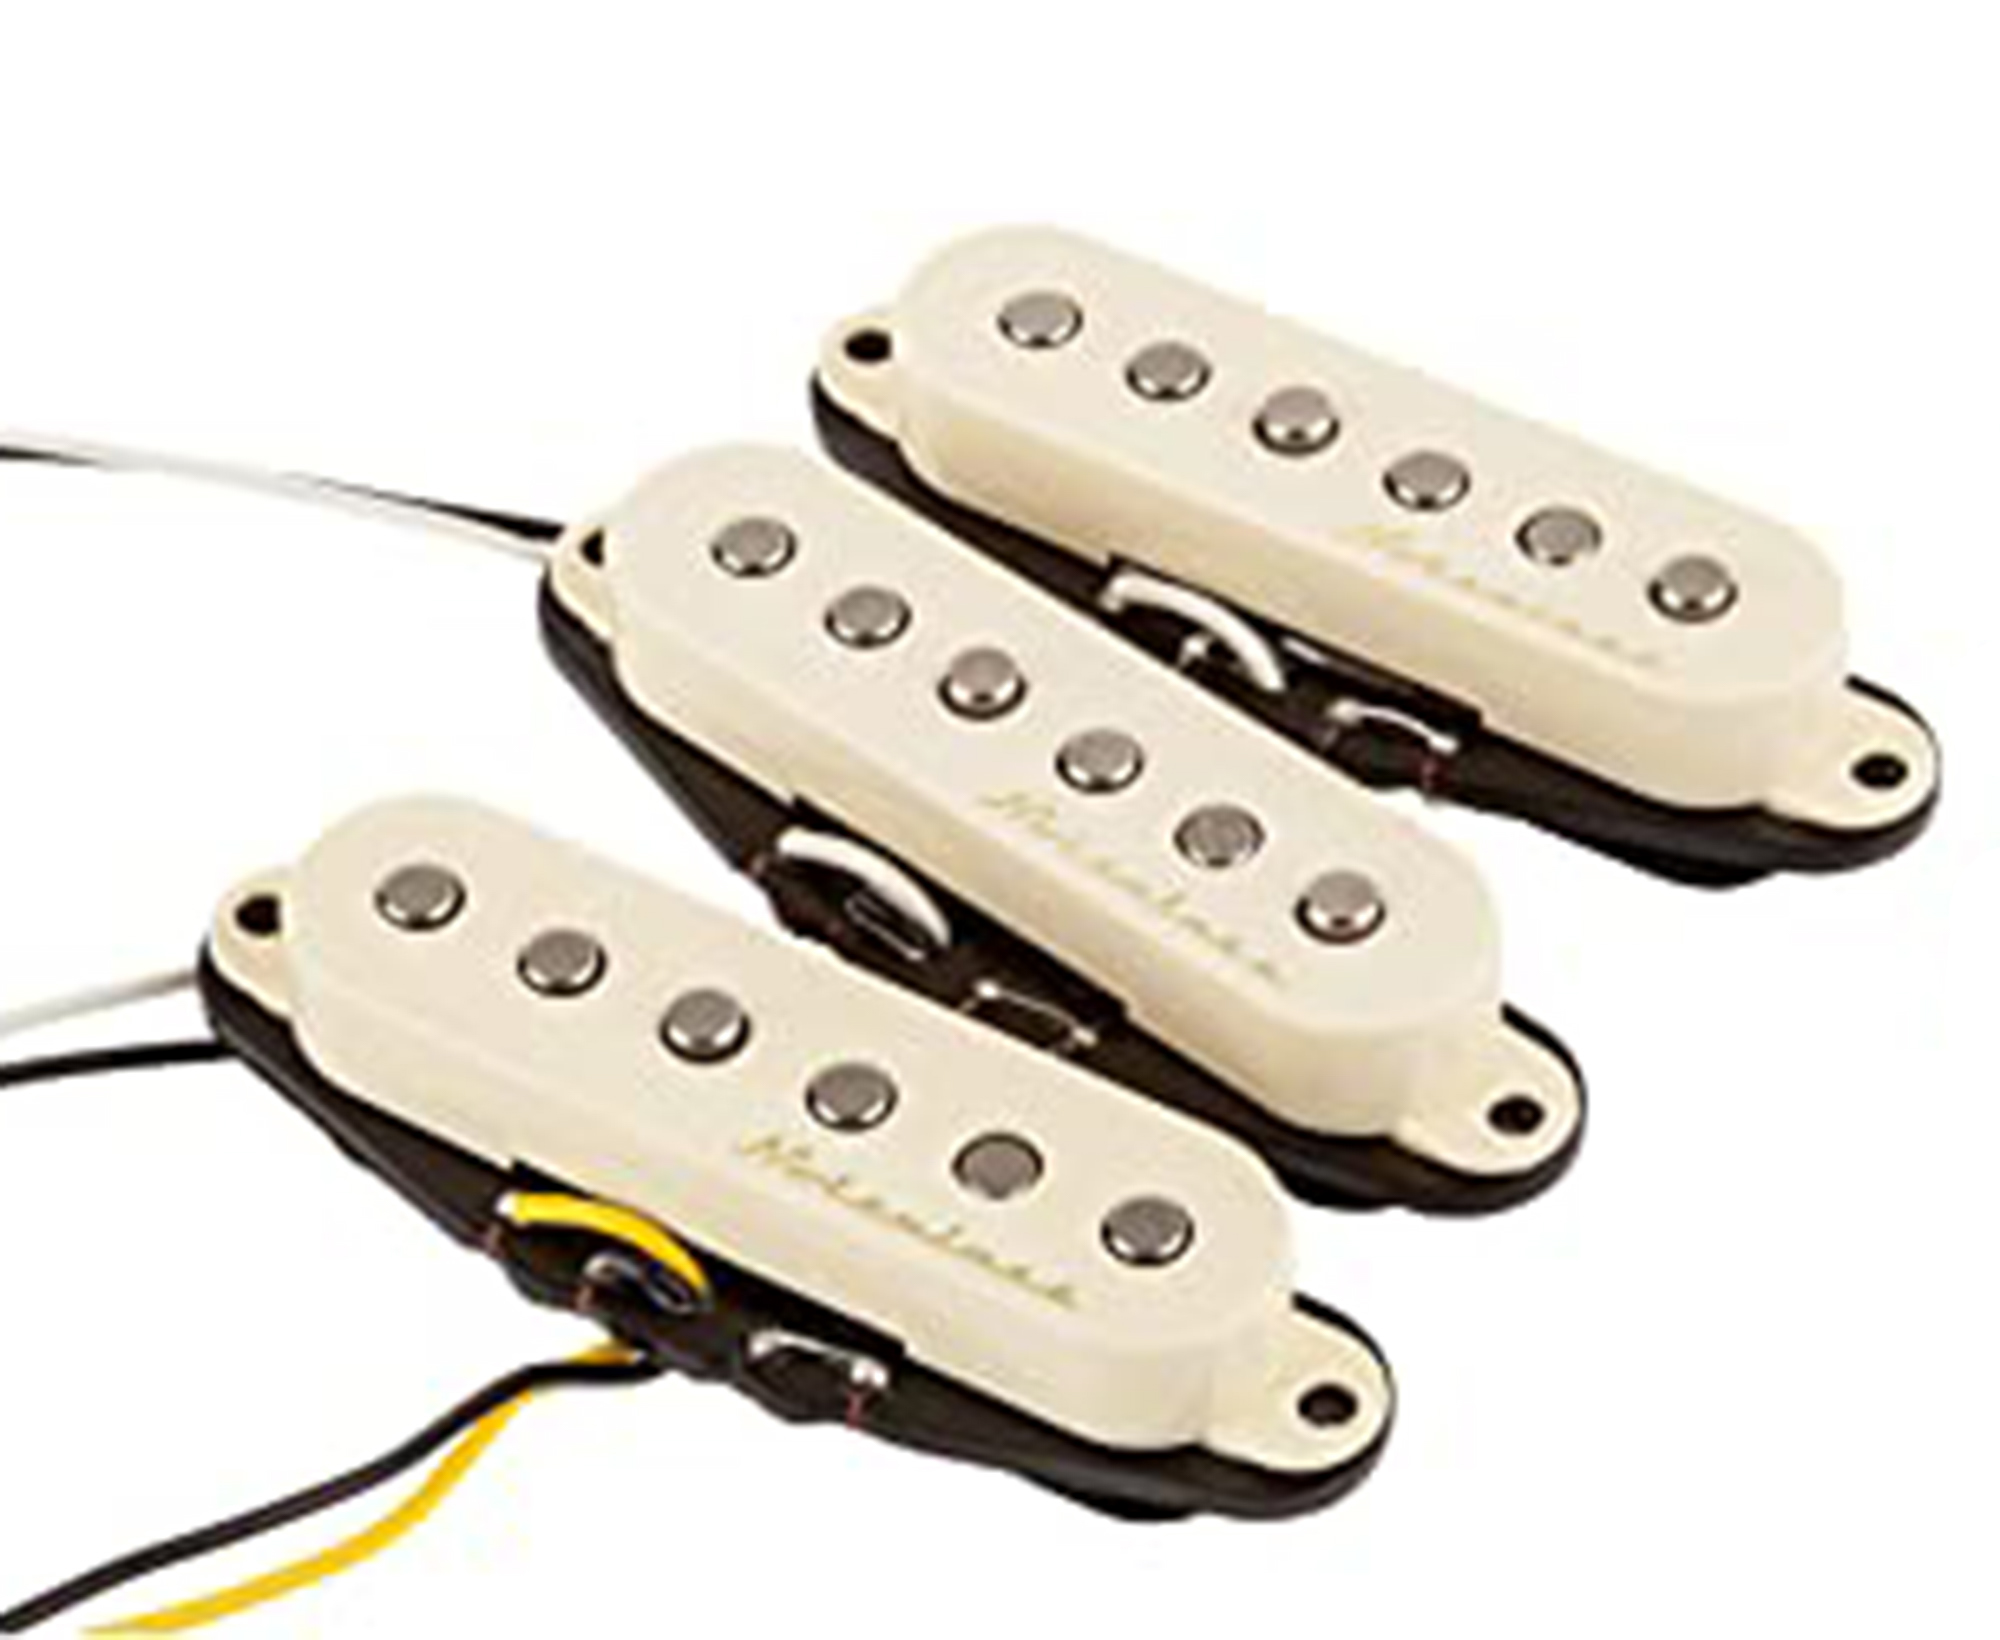 Fender Vintage Noiseless Stratocaster Pickups 885978023578 | eBay